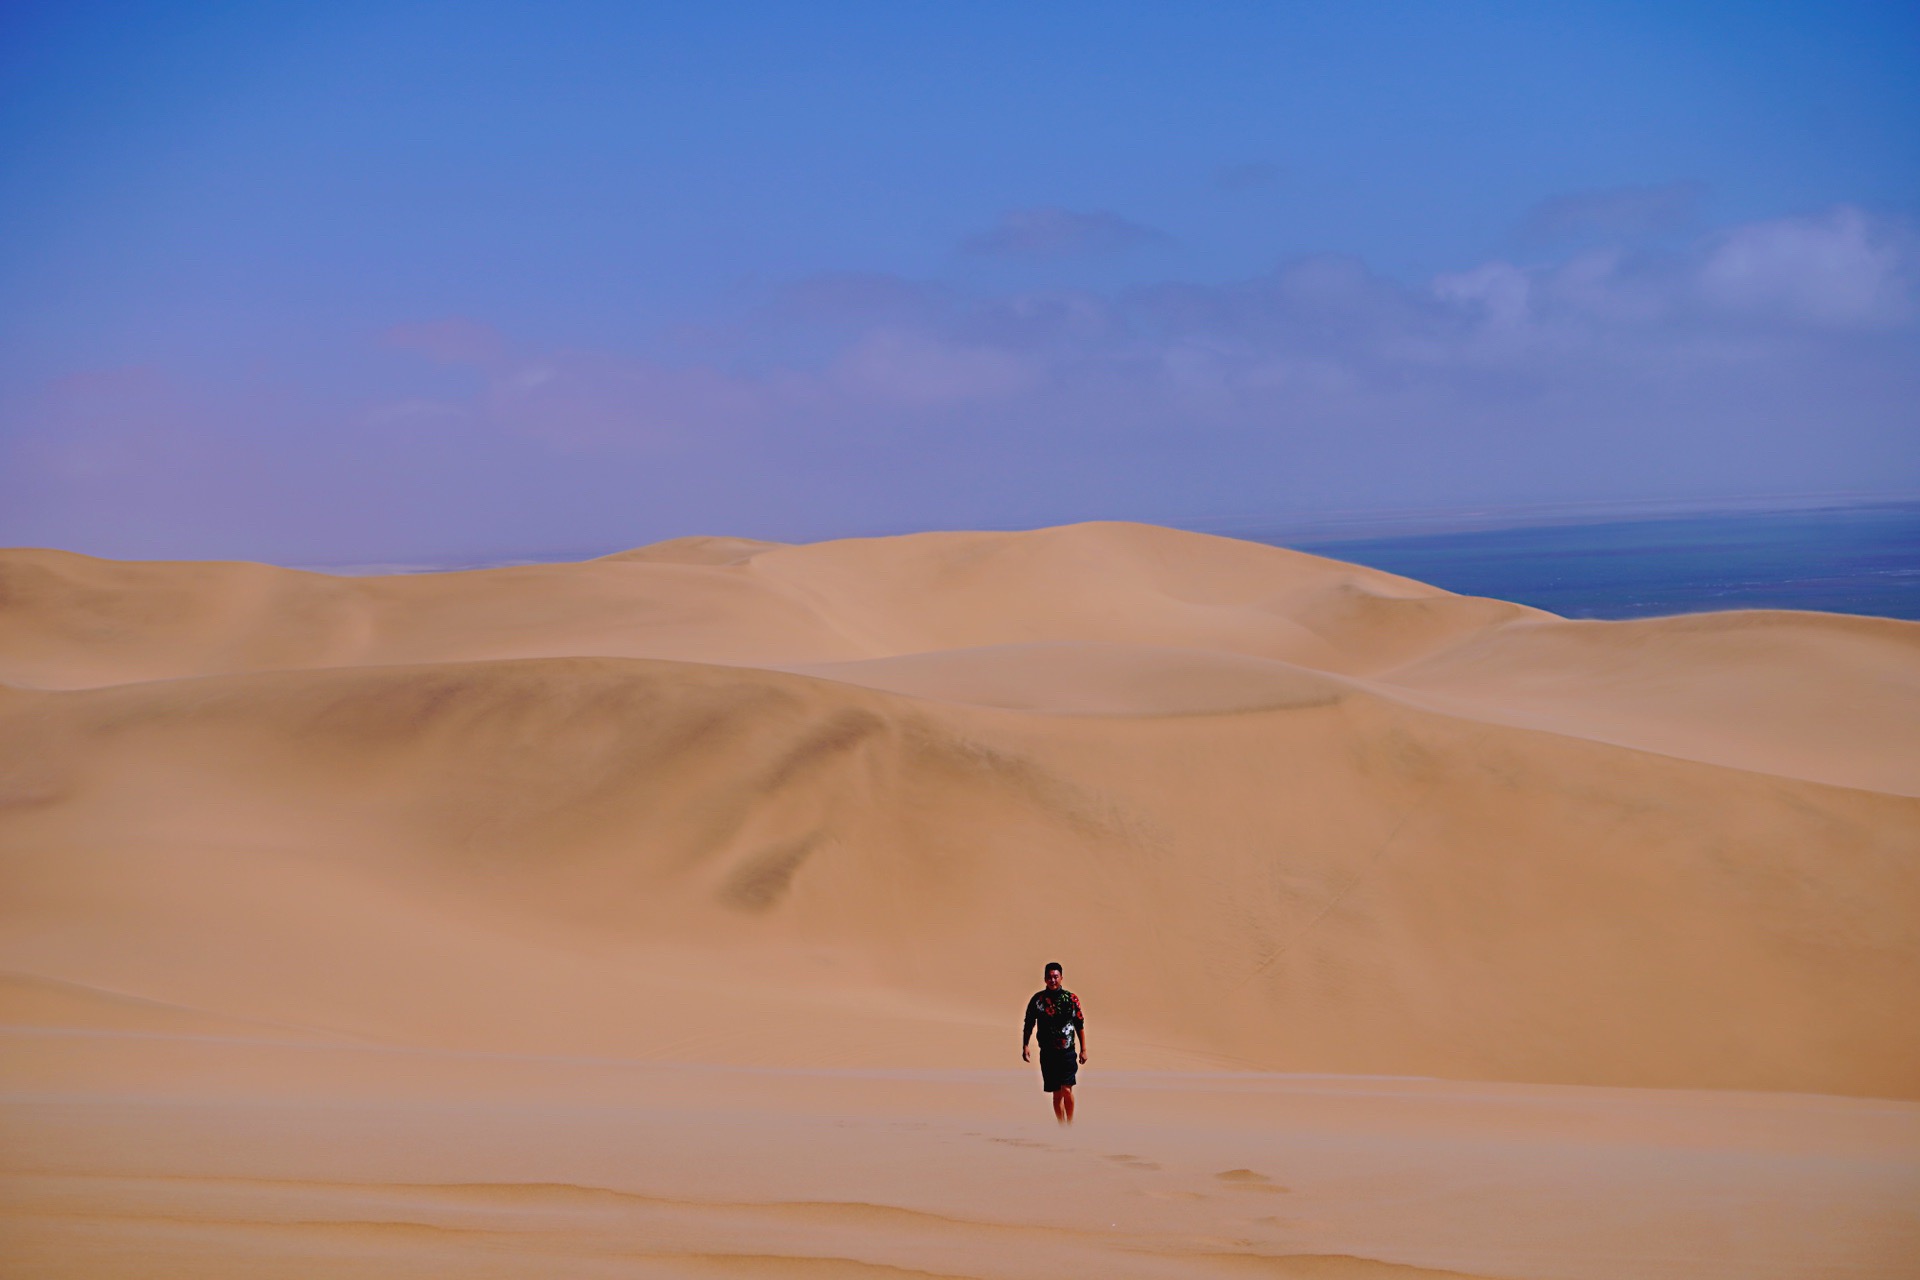 三明治沙漠巡游。一边是浩瀚波涛汹涌的的大西洋，一边是终年无雨寸草不生的纳米布沙漠。岁月和时光在这里静